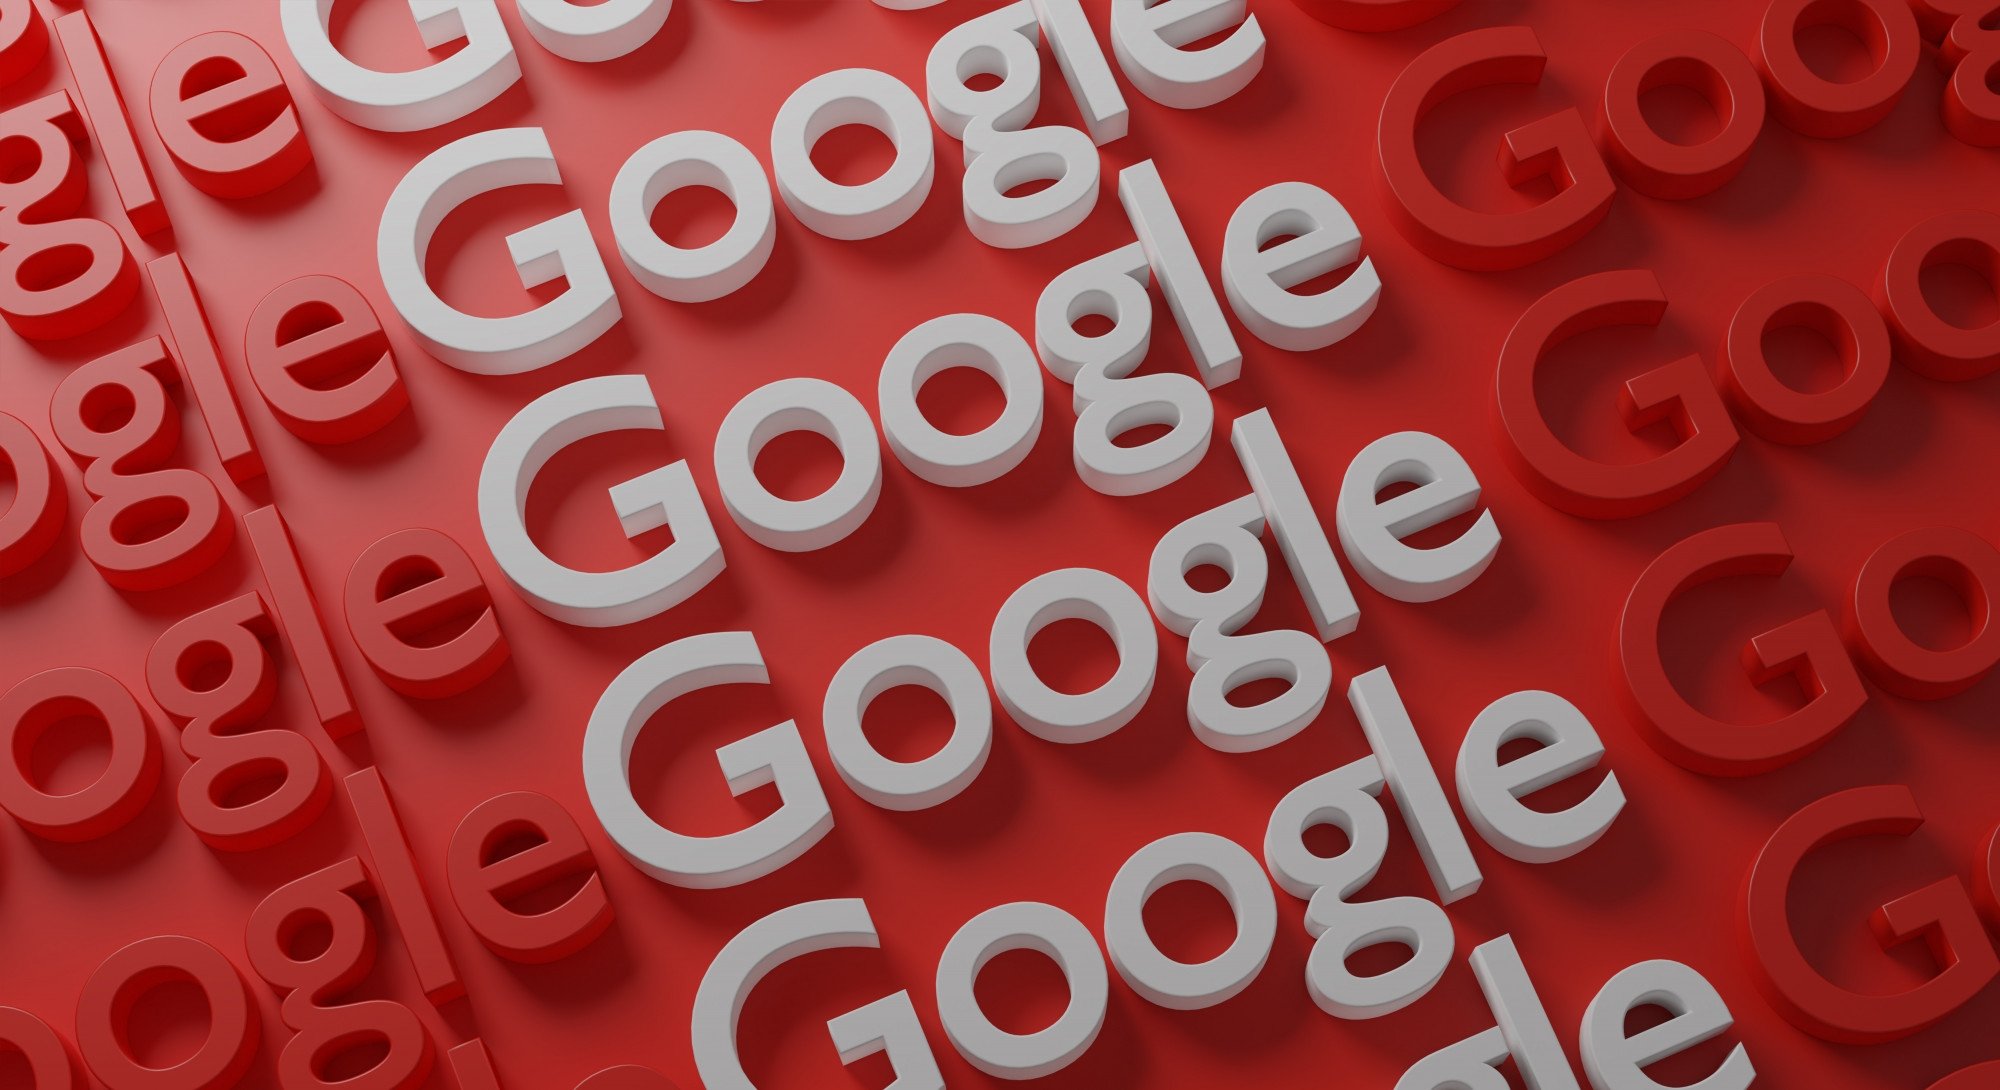 Logo da Google em repetição em fundo vermelho